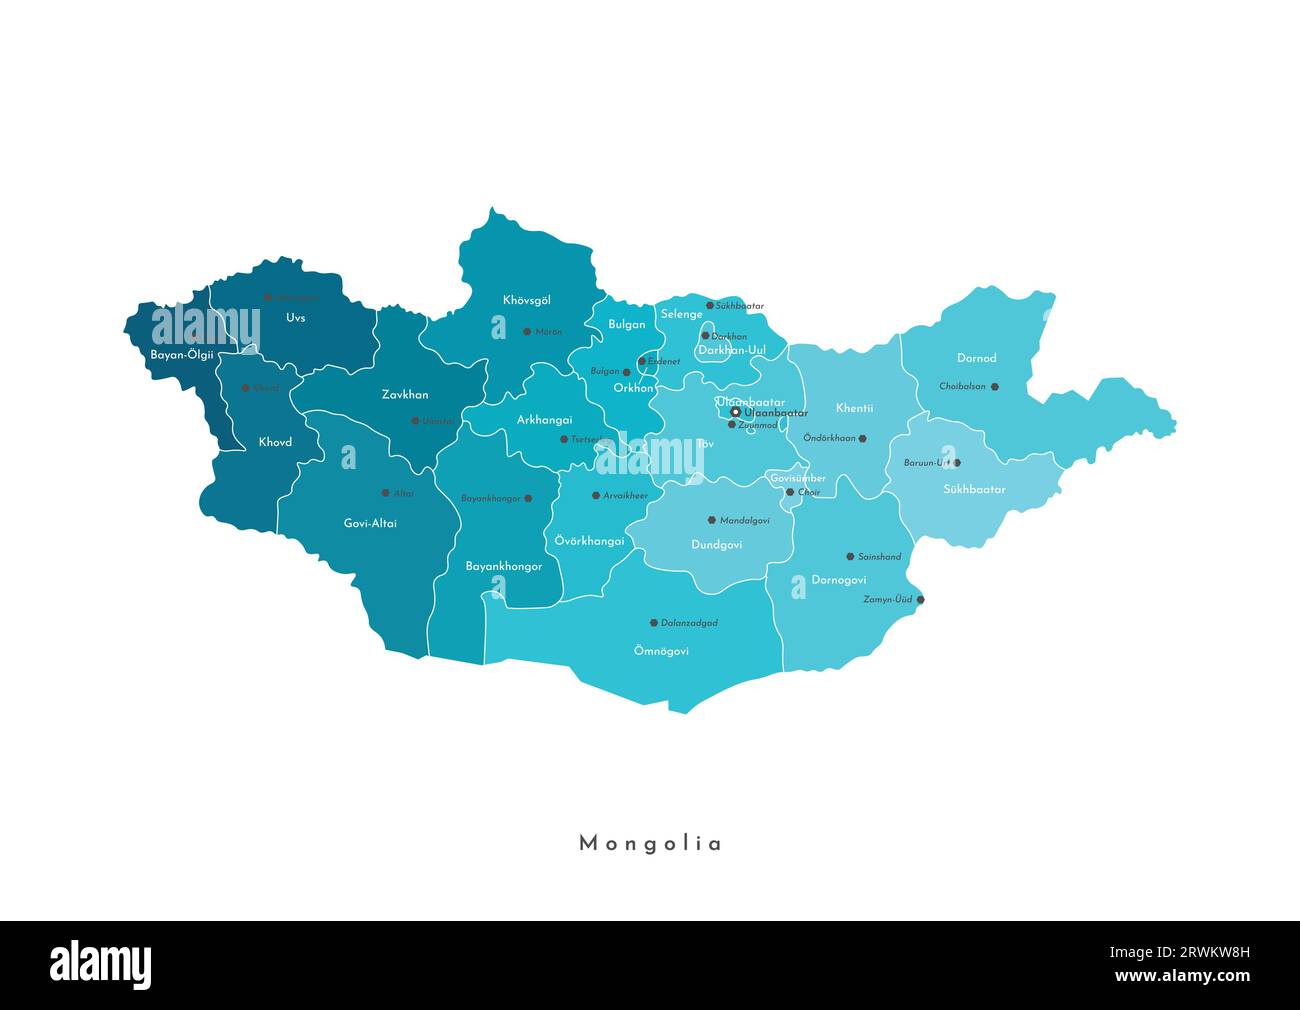 Illustrazione vettoriale moderna isolata. Mappa geografica semplificata della Mongolia. Nomi delle città e province mongole (aimags). Colori sfumati blu Illustrazione Vettoriale